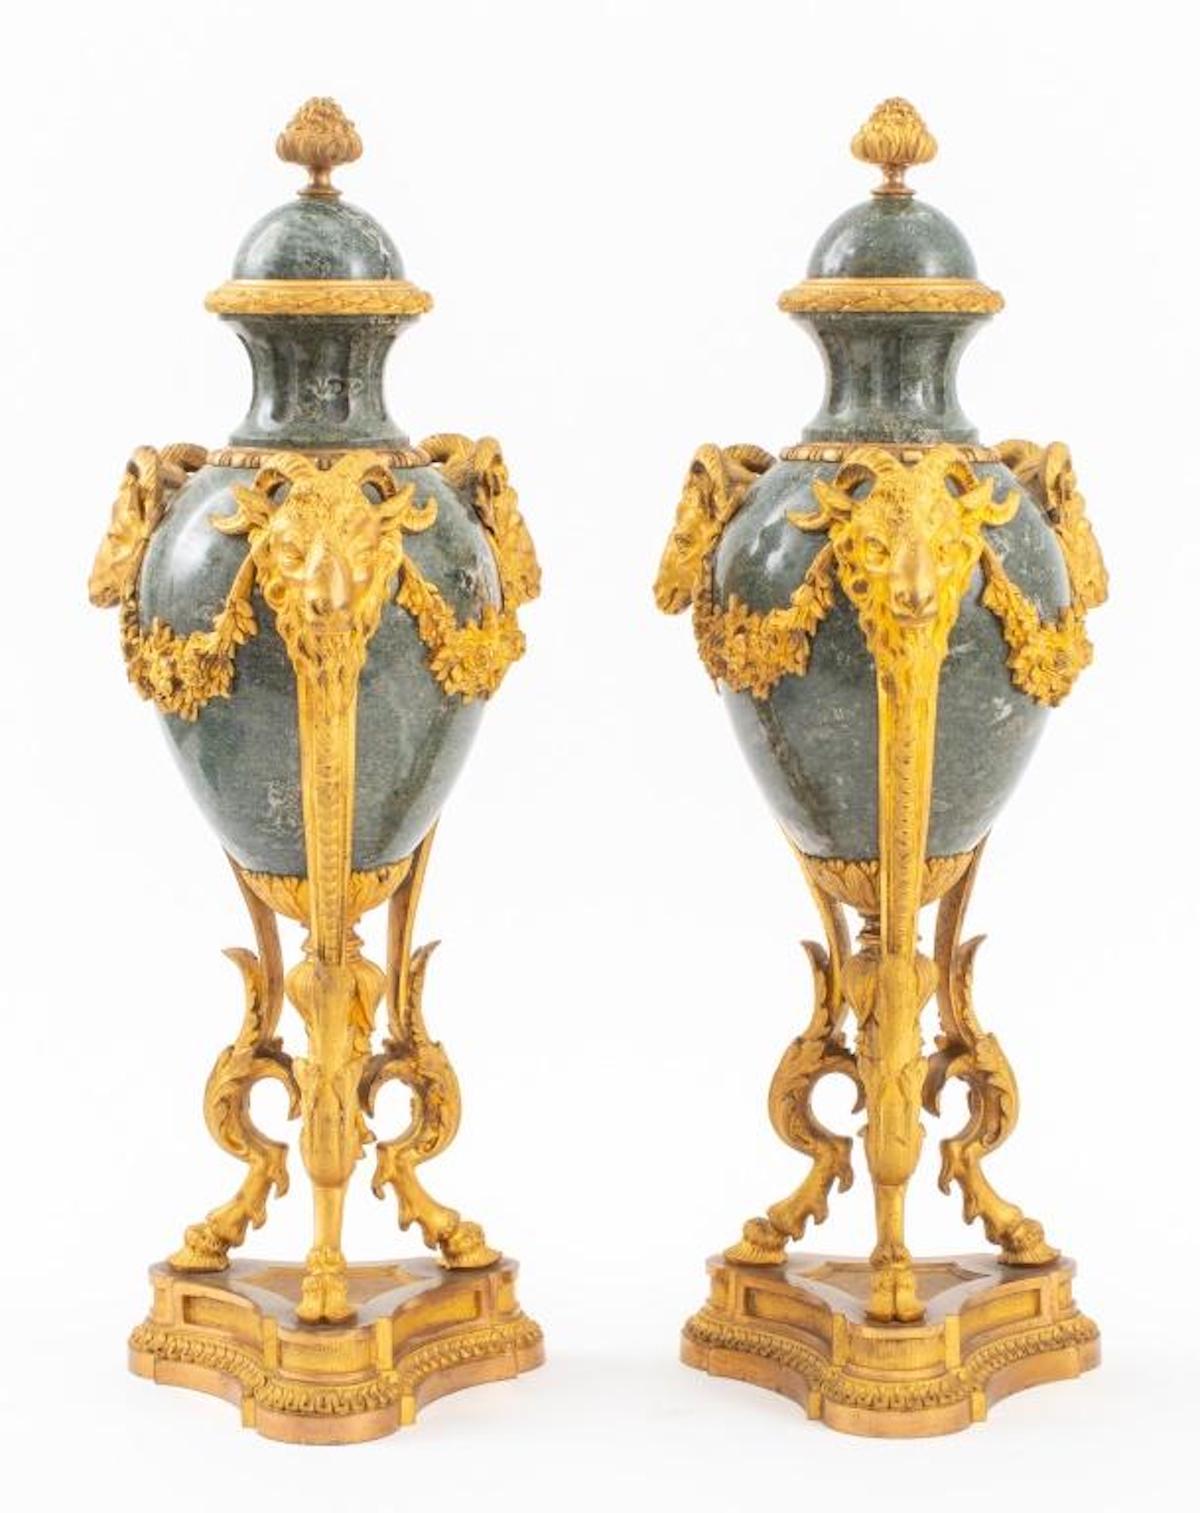 Großes Paar balusterförmiger, vergoldeter, bronzegefasster Marmorschmuck / Urnen in der Art von Pierre Gouthiere (Franzose, 1732-1813). Jeder Fuß Urne / Garnitur verfügt über eine fruchtige finials über verde antico Marmor Kappen, kannelierte Hälse